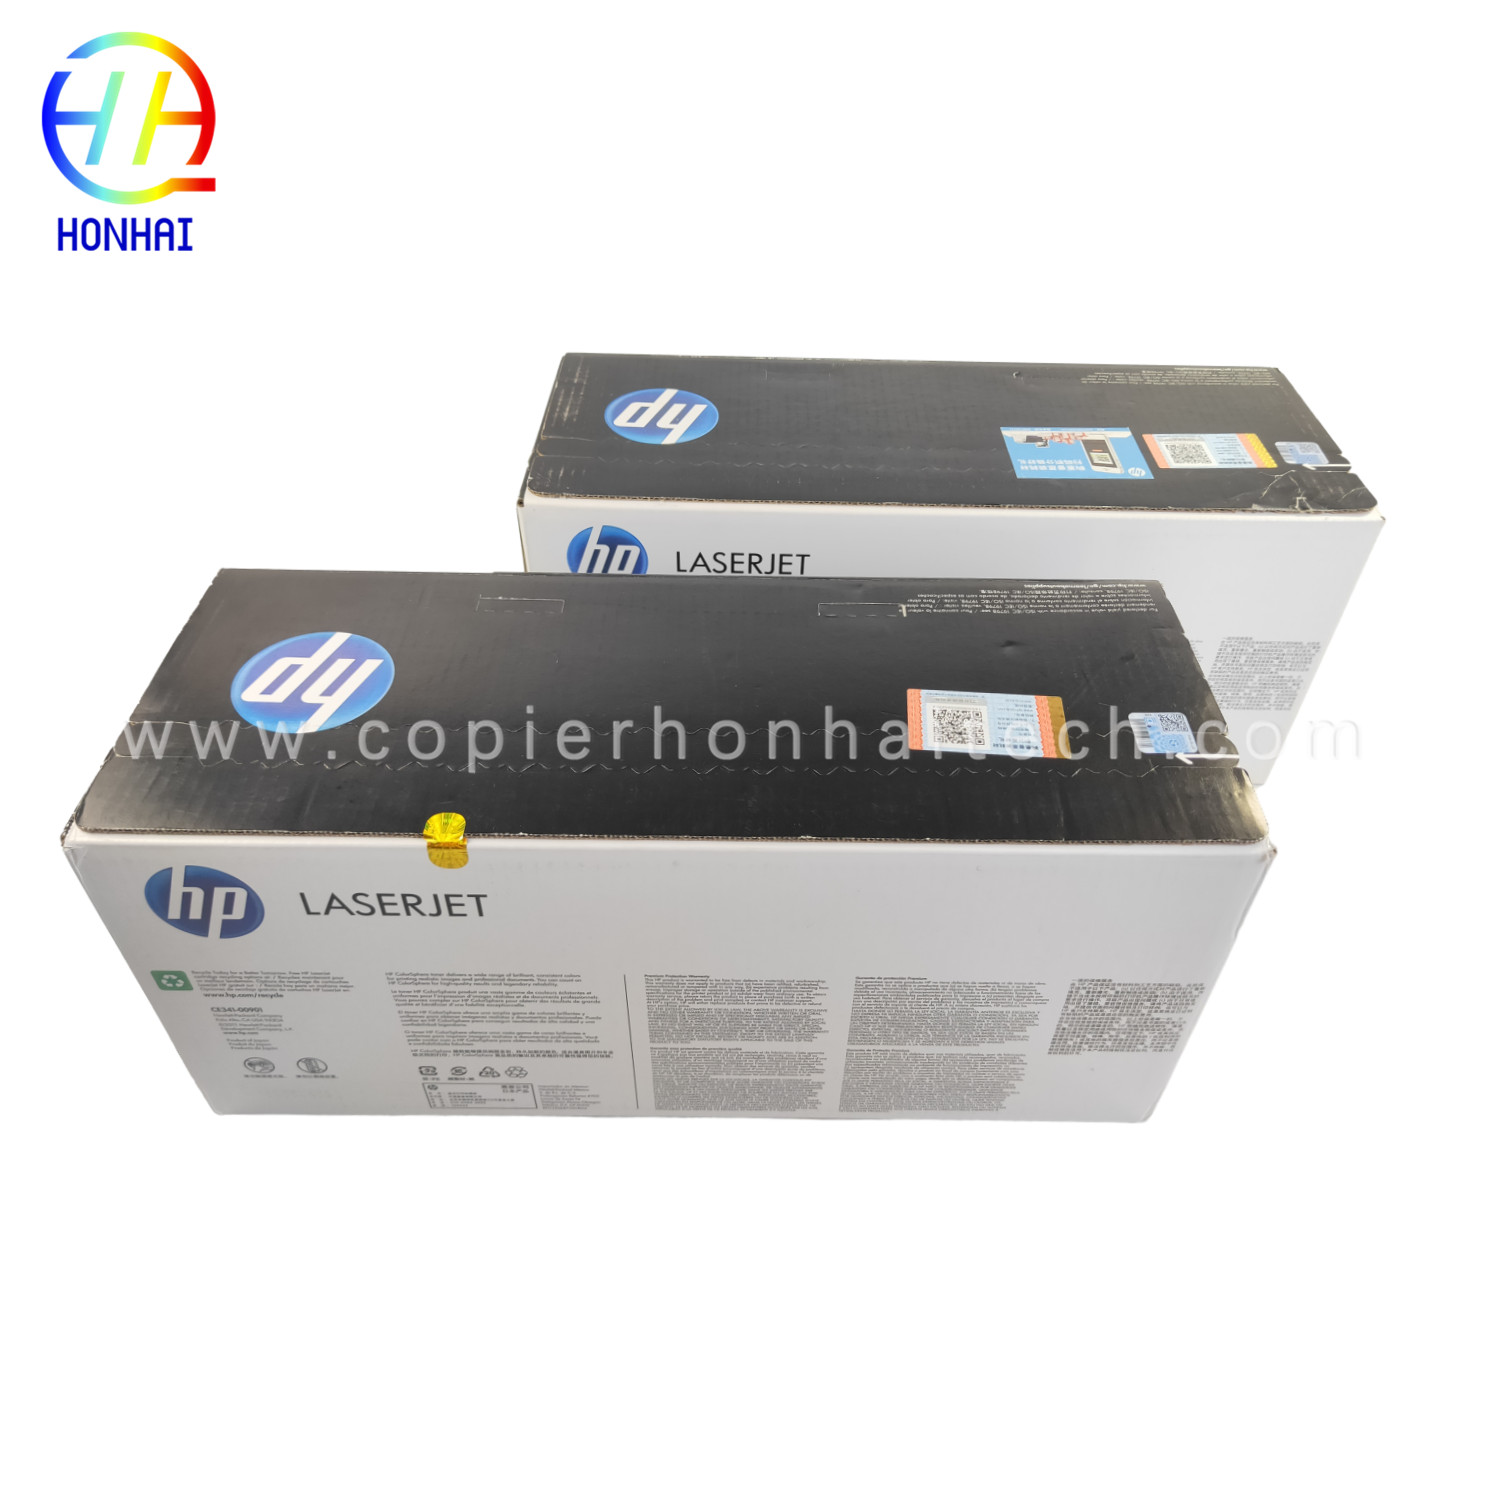 https://www.copierhonhaitech.com/original-toner-cartridge-for-hp-laserjet-enterprise-700-color-mfp-m775-series-651a-ce341a-cyan-ce342ac-yellow-16000-page-product/